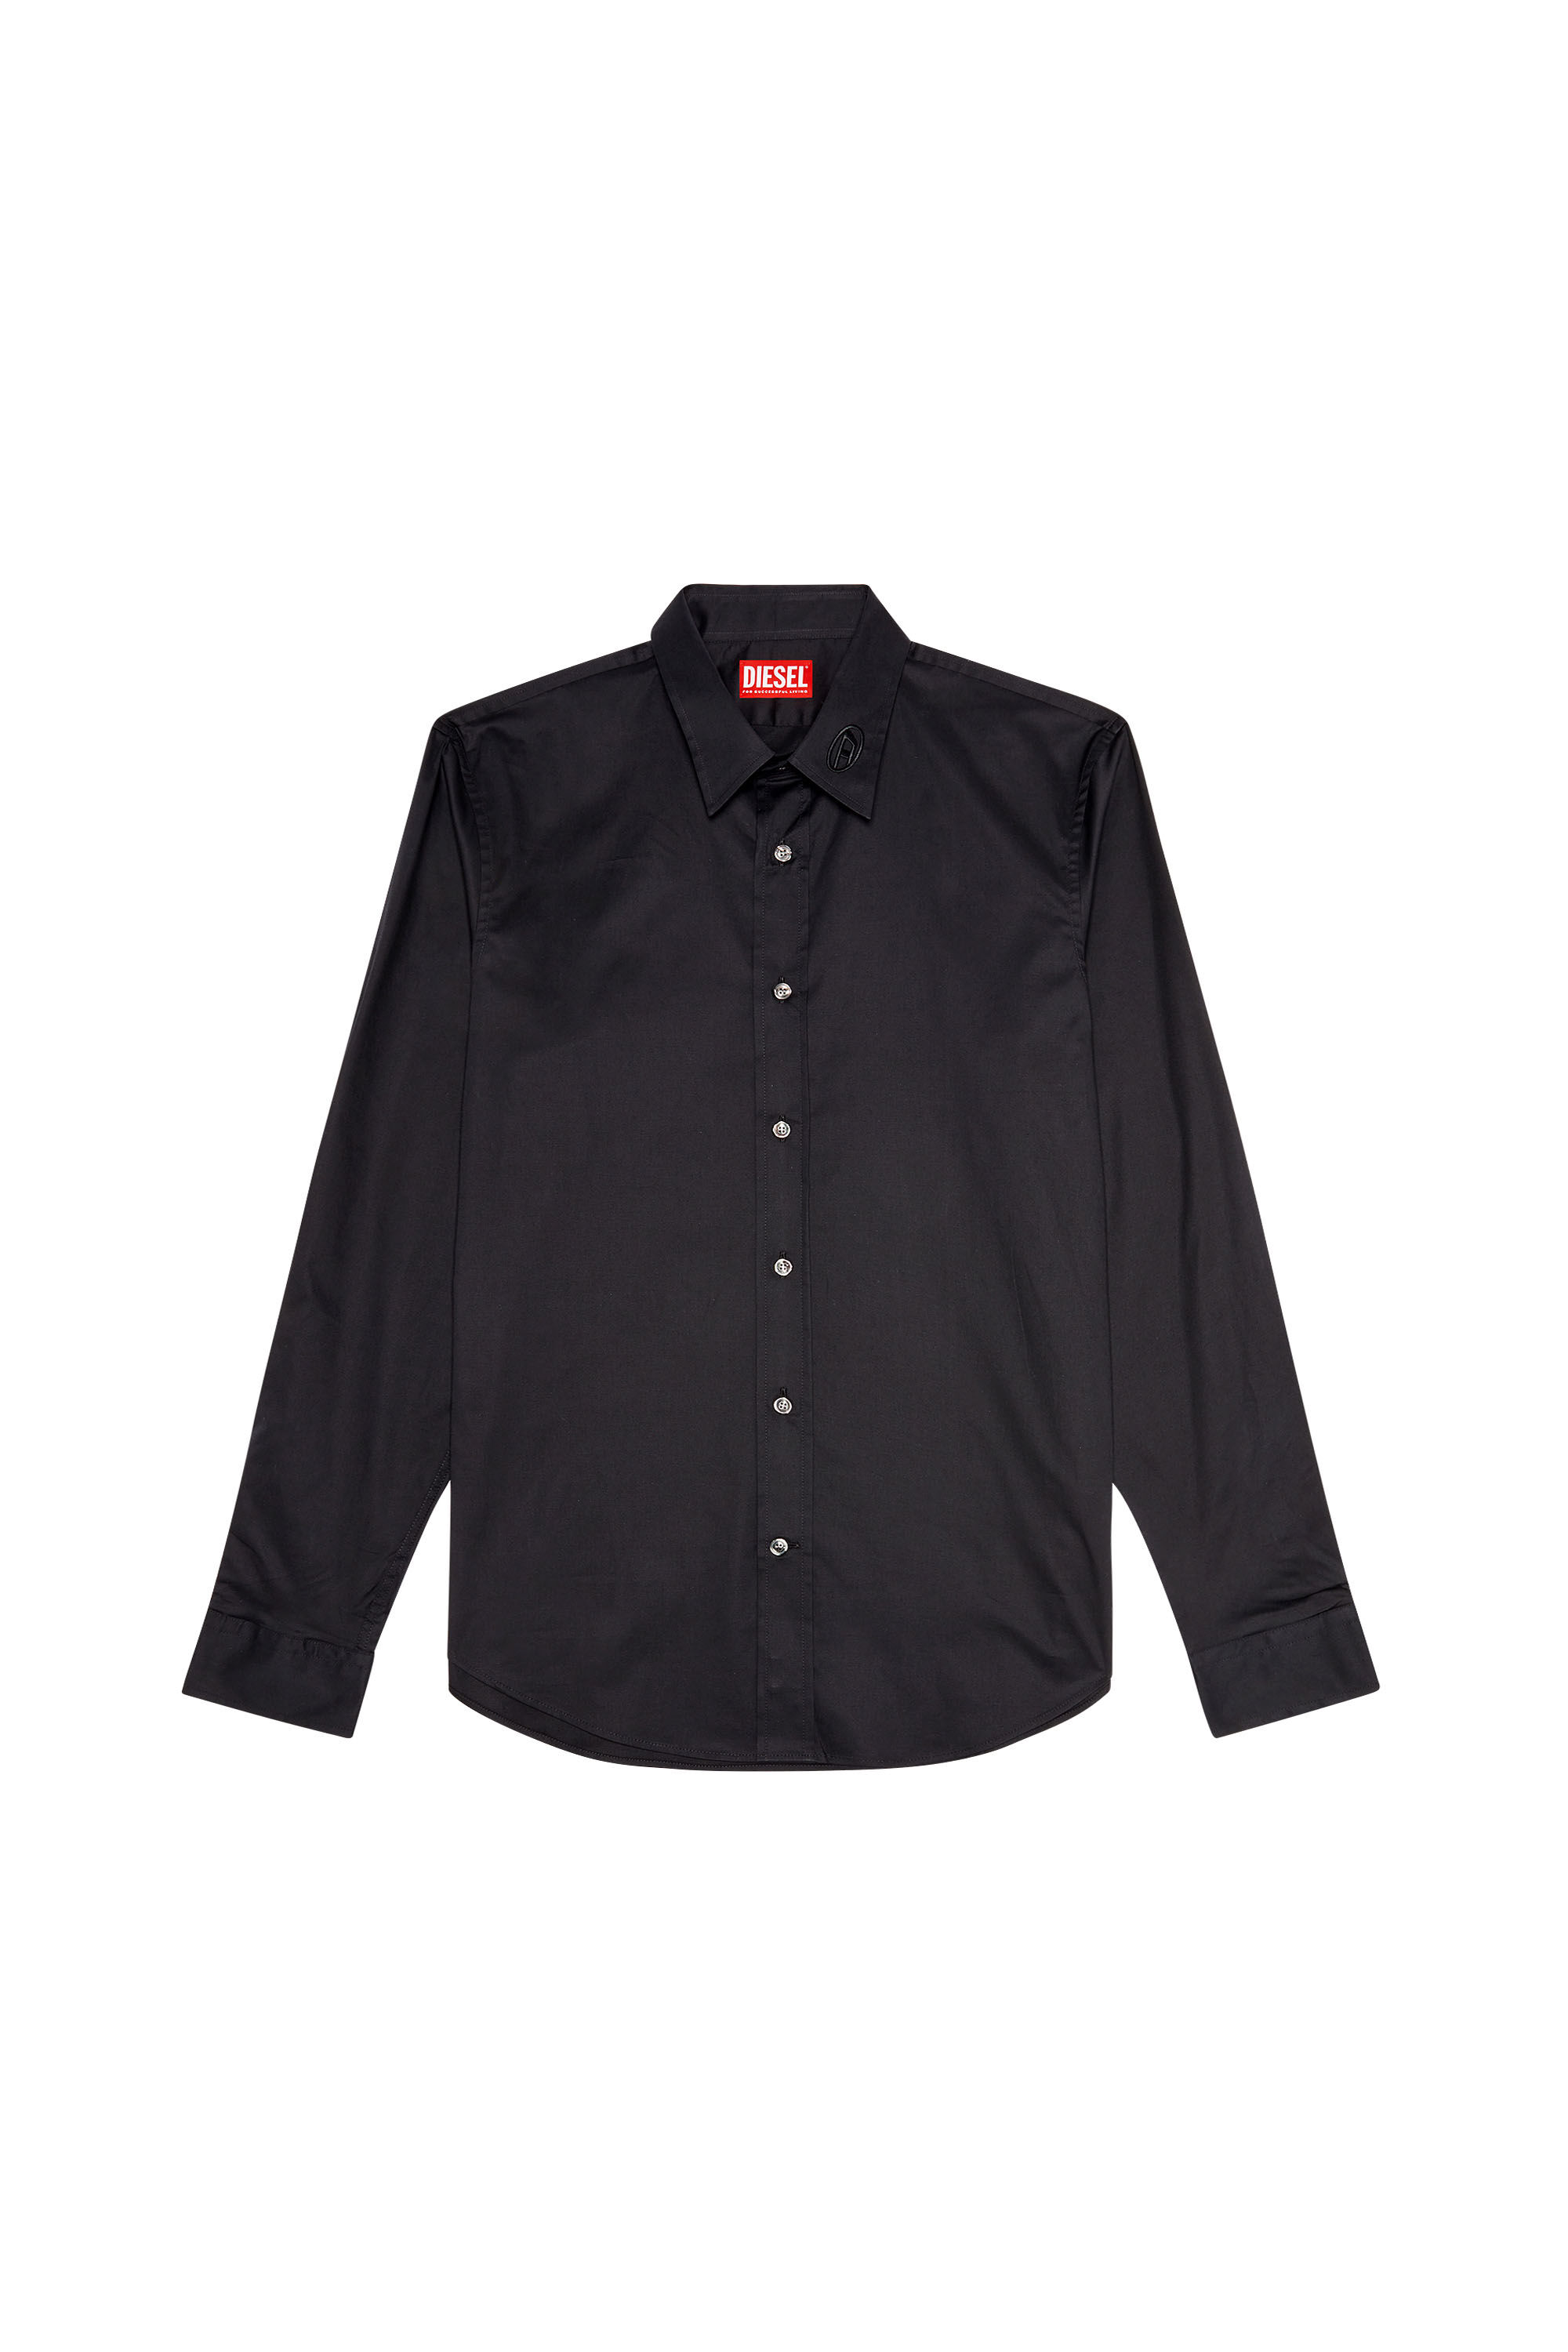 Diesel - S-BENNY-CL, Hombre Camisa de microtwill con bordado tonal in Negro - Image 2